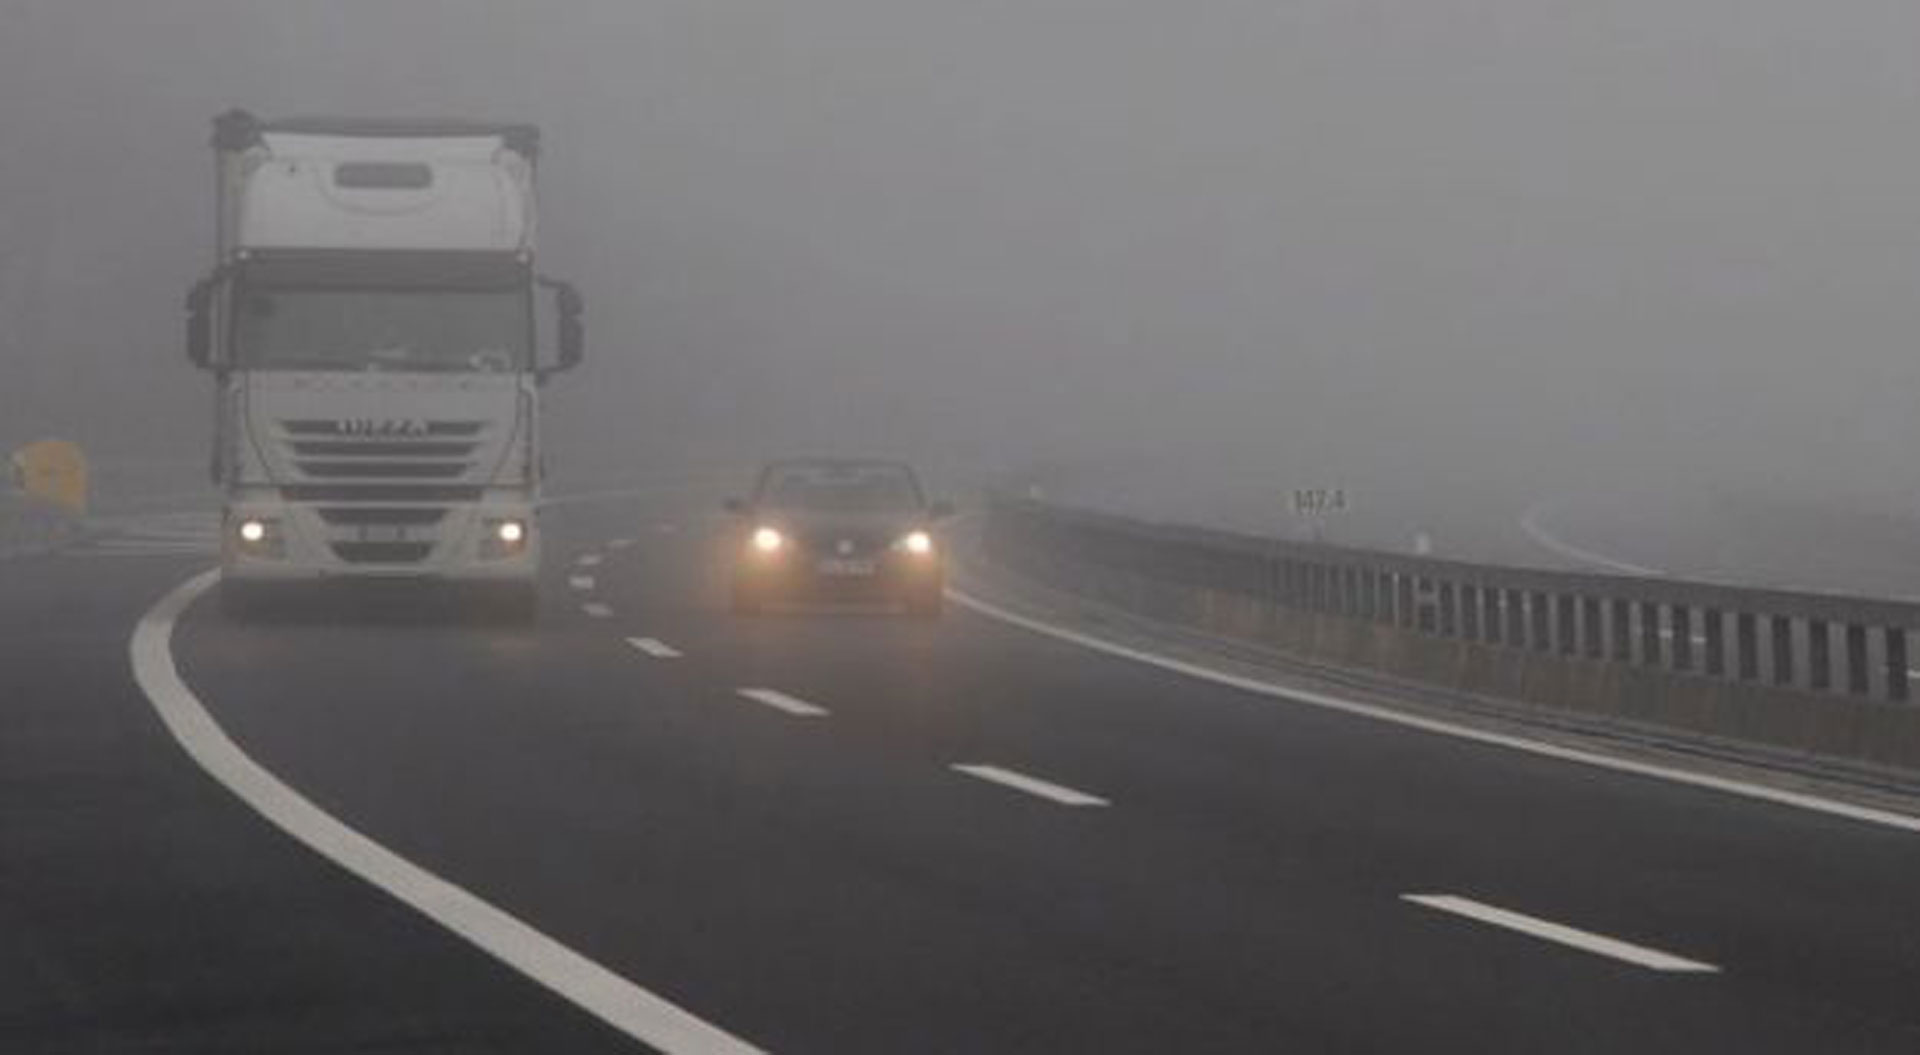 Magla smanjuje vidljivost magla cesta auto kamion